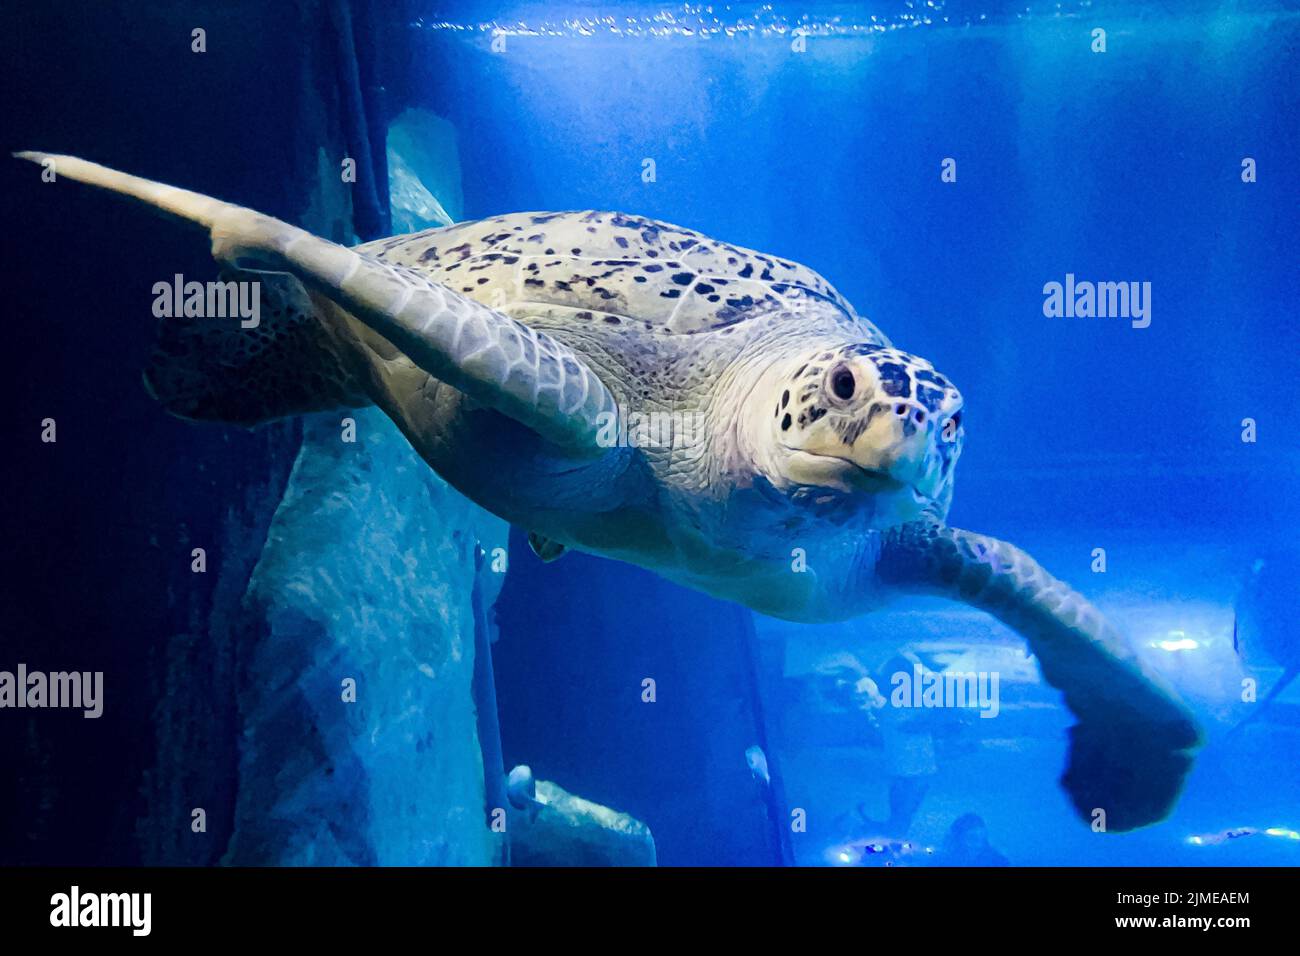 Freitag schwimmt die Grüne Schildkröte im National Marine Aquarium (NMA) in Plymouth an einem neu montierten Käfig im größten und tiefsten Tank Großbritanniens vorbei. Die Ausstellung für den Atlantischen Ozean ermöglicht es den Menschen, die Unterwasserwelt in einem Tank mit 2,5 Millionen Litern Wasser aus nächster Nähe zu betrachten. Bilddatum: Freitag, 5. August 2022. Stockfoto